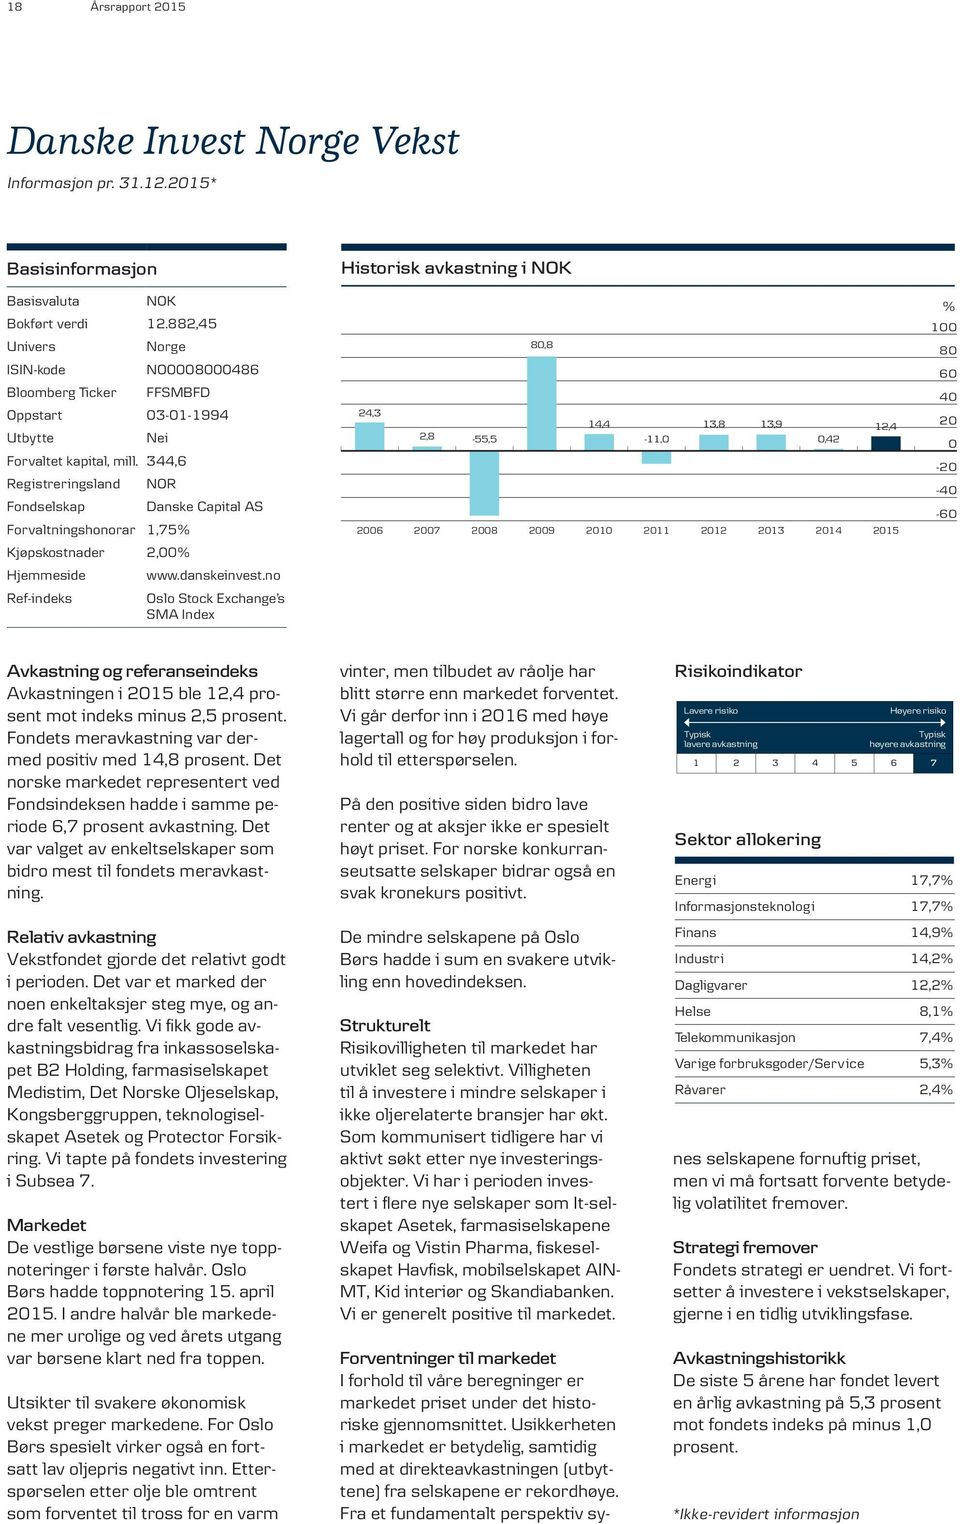 344,6 Registreringsland Fondselskap NOR Forvaltningshonorar 1,75% Kjøpskostnader 2,00% Hjemmeside Ref-indeks Danske Capital AS www.danskeinvest.